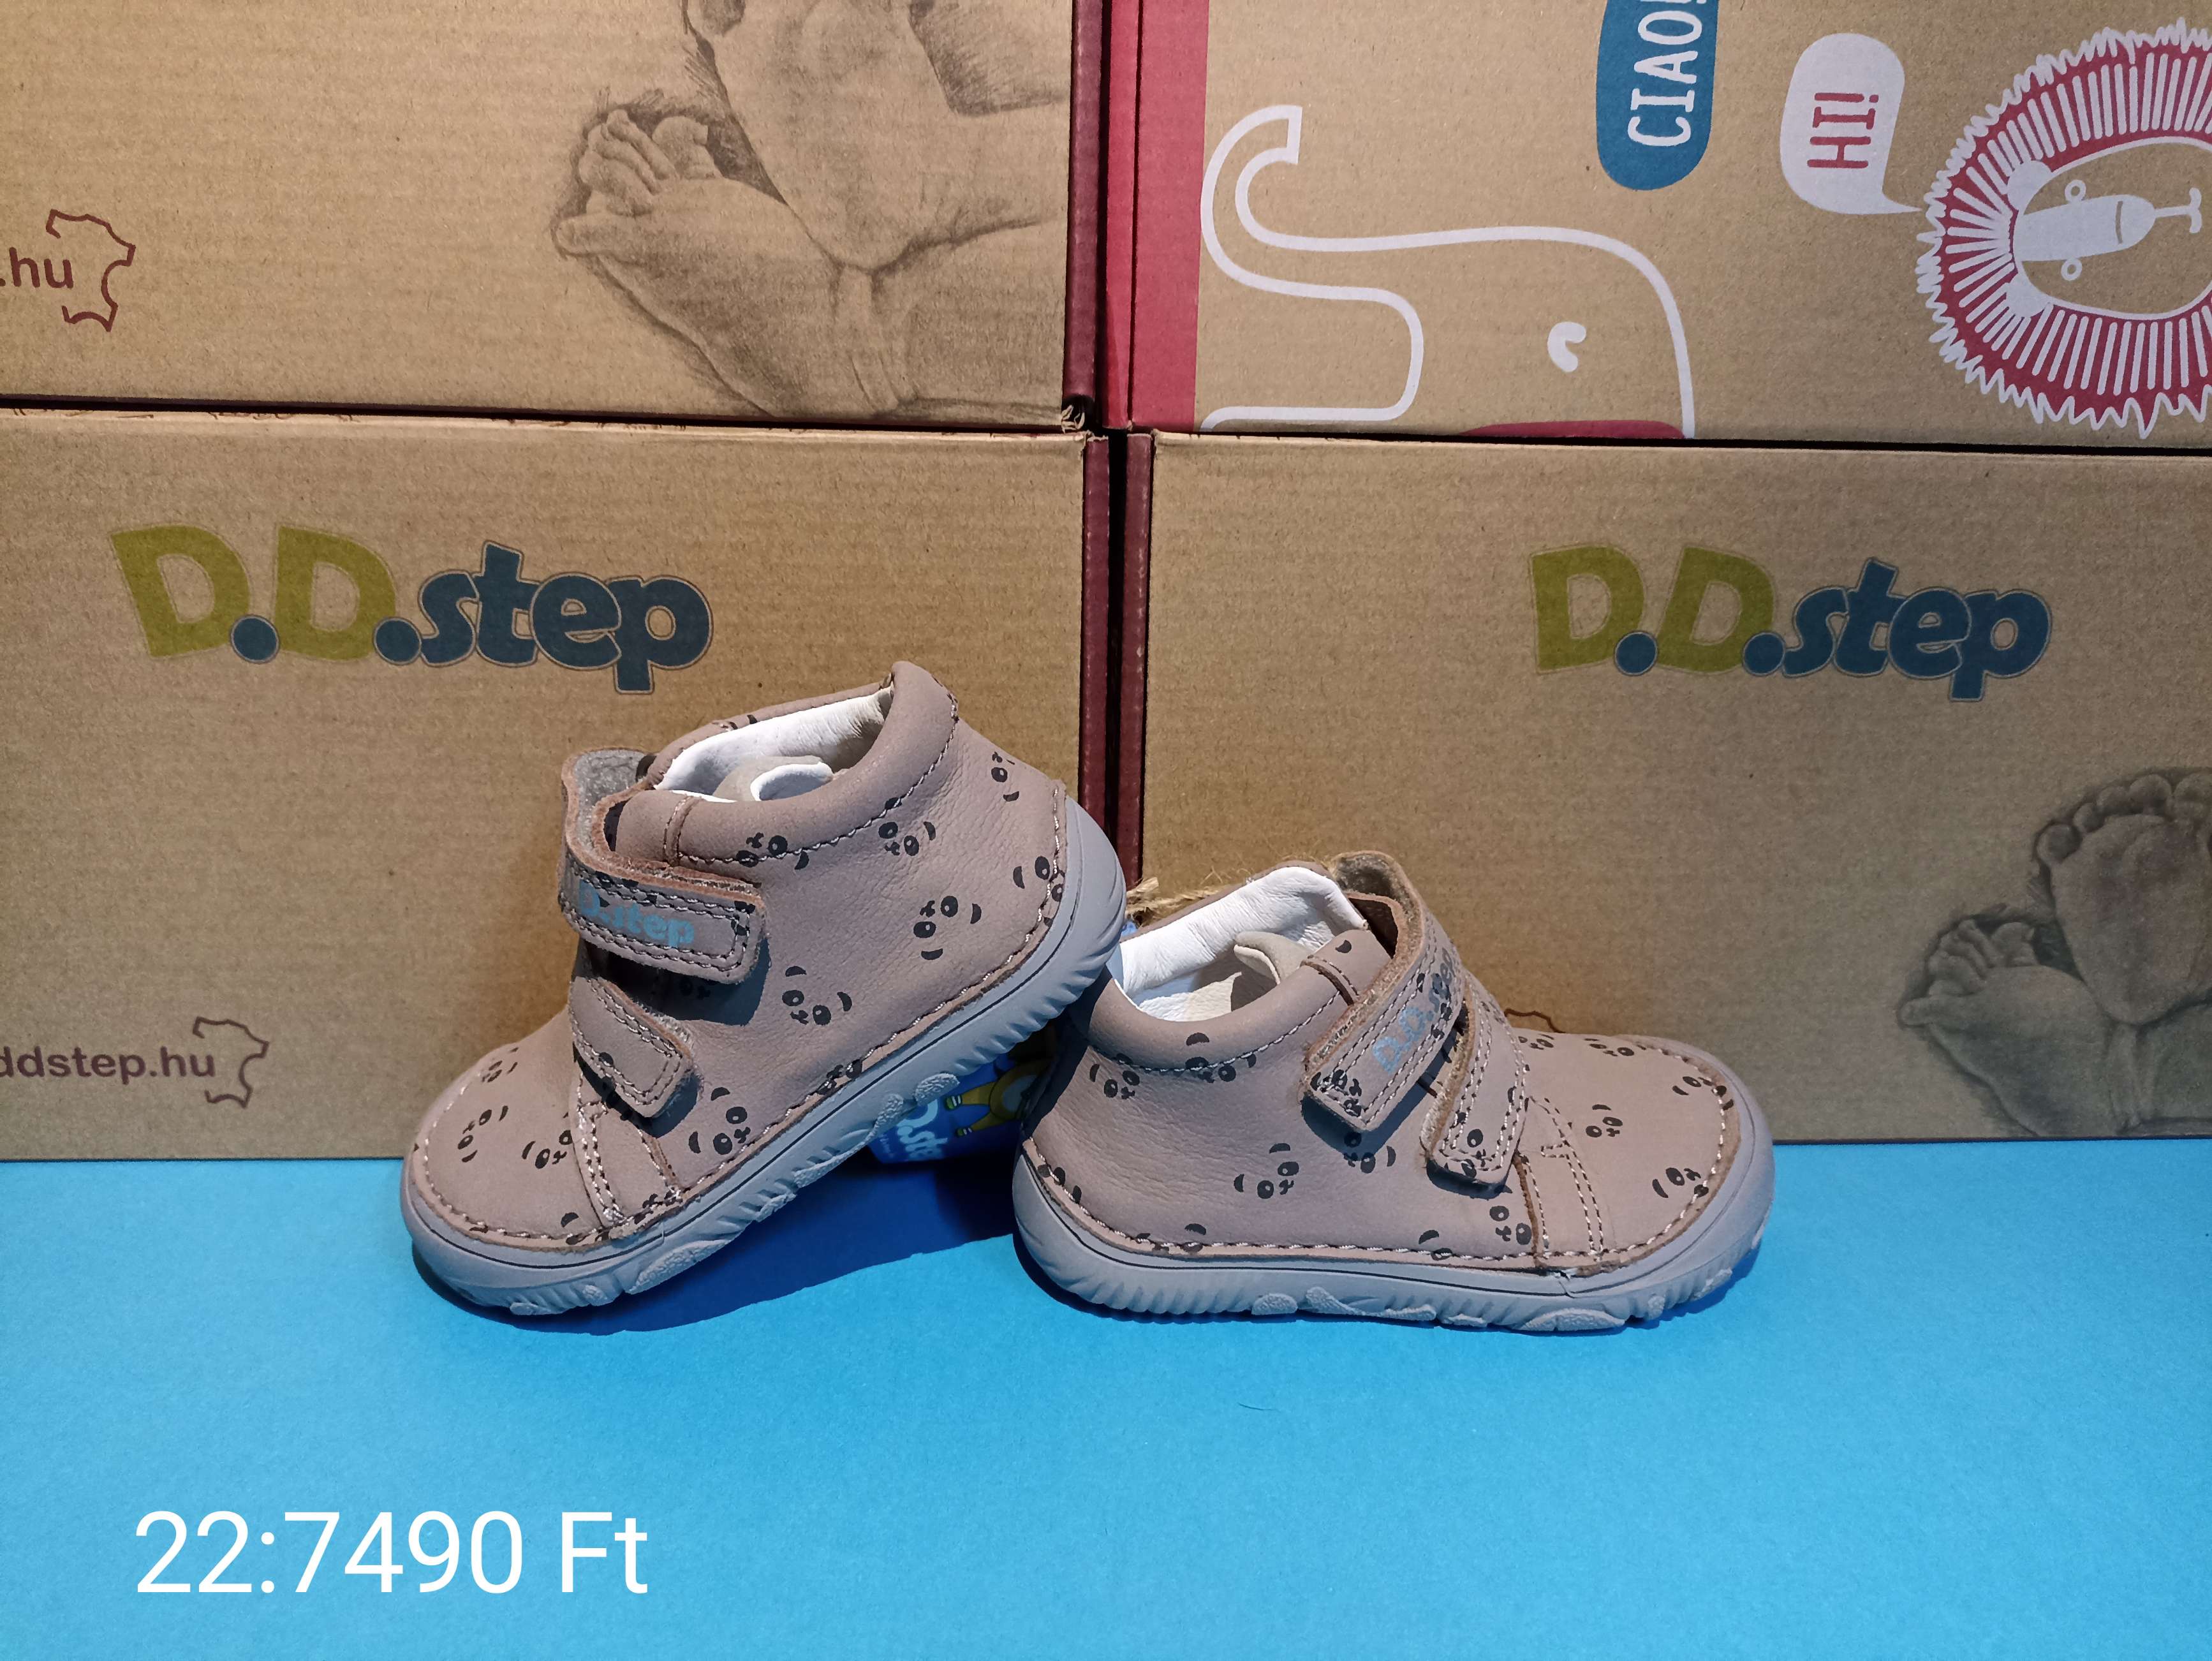 D.D.step gyermek cipő